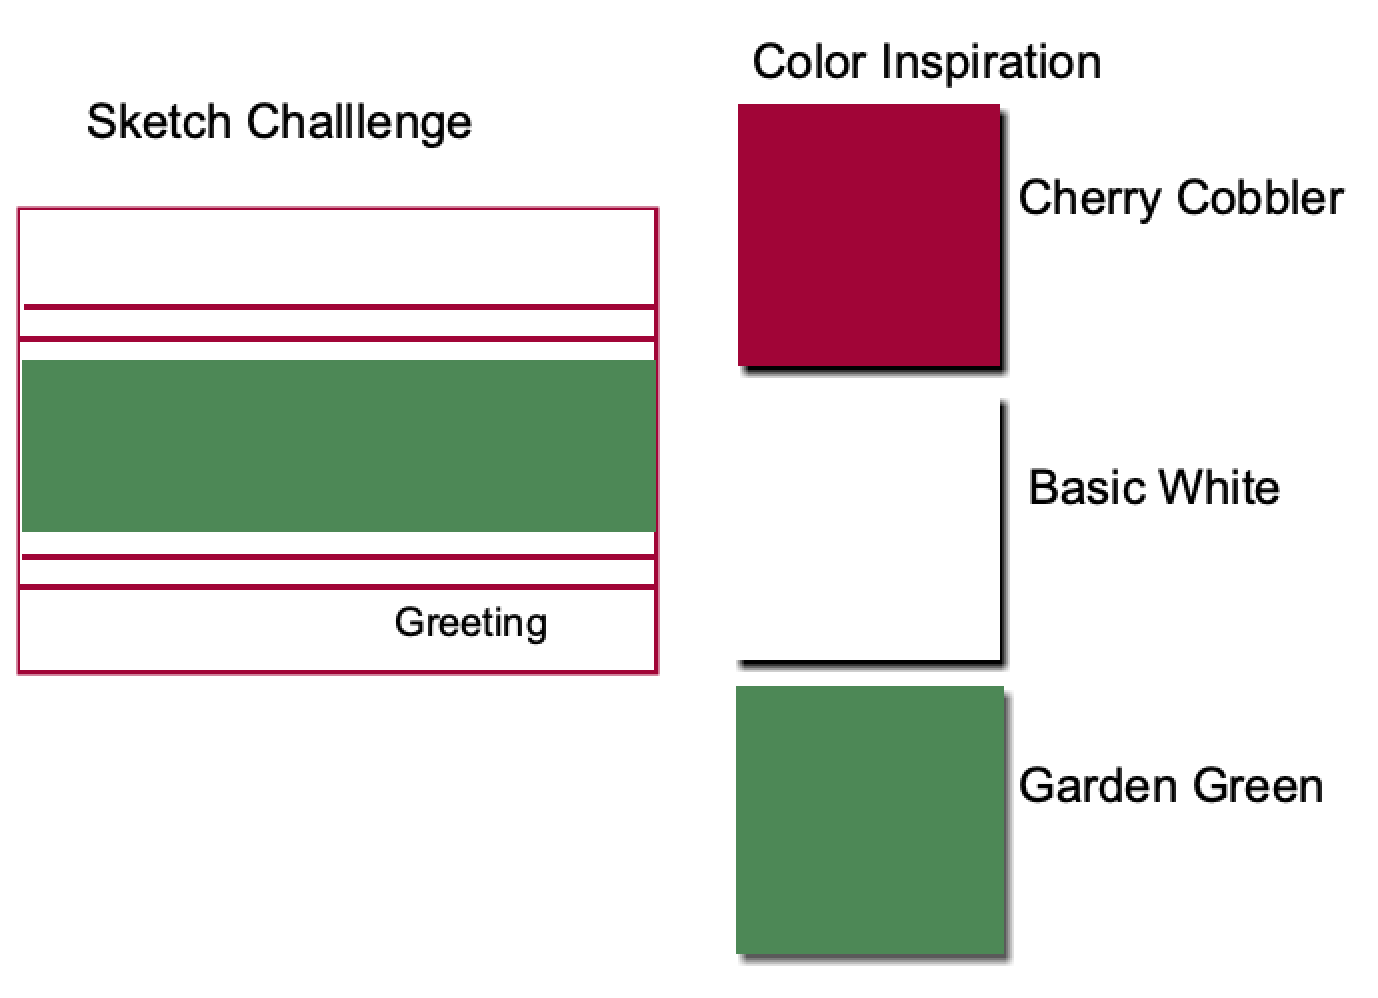 December Sketch Challenge and Color Inspiration